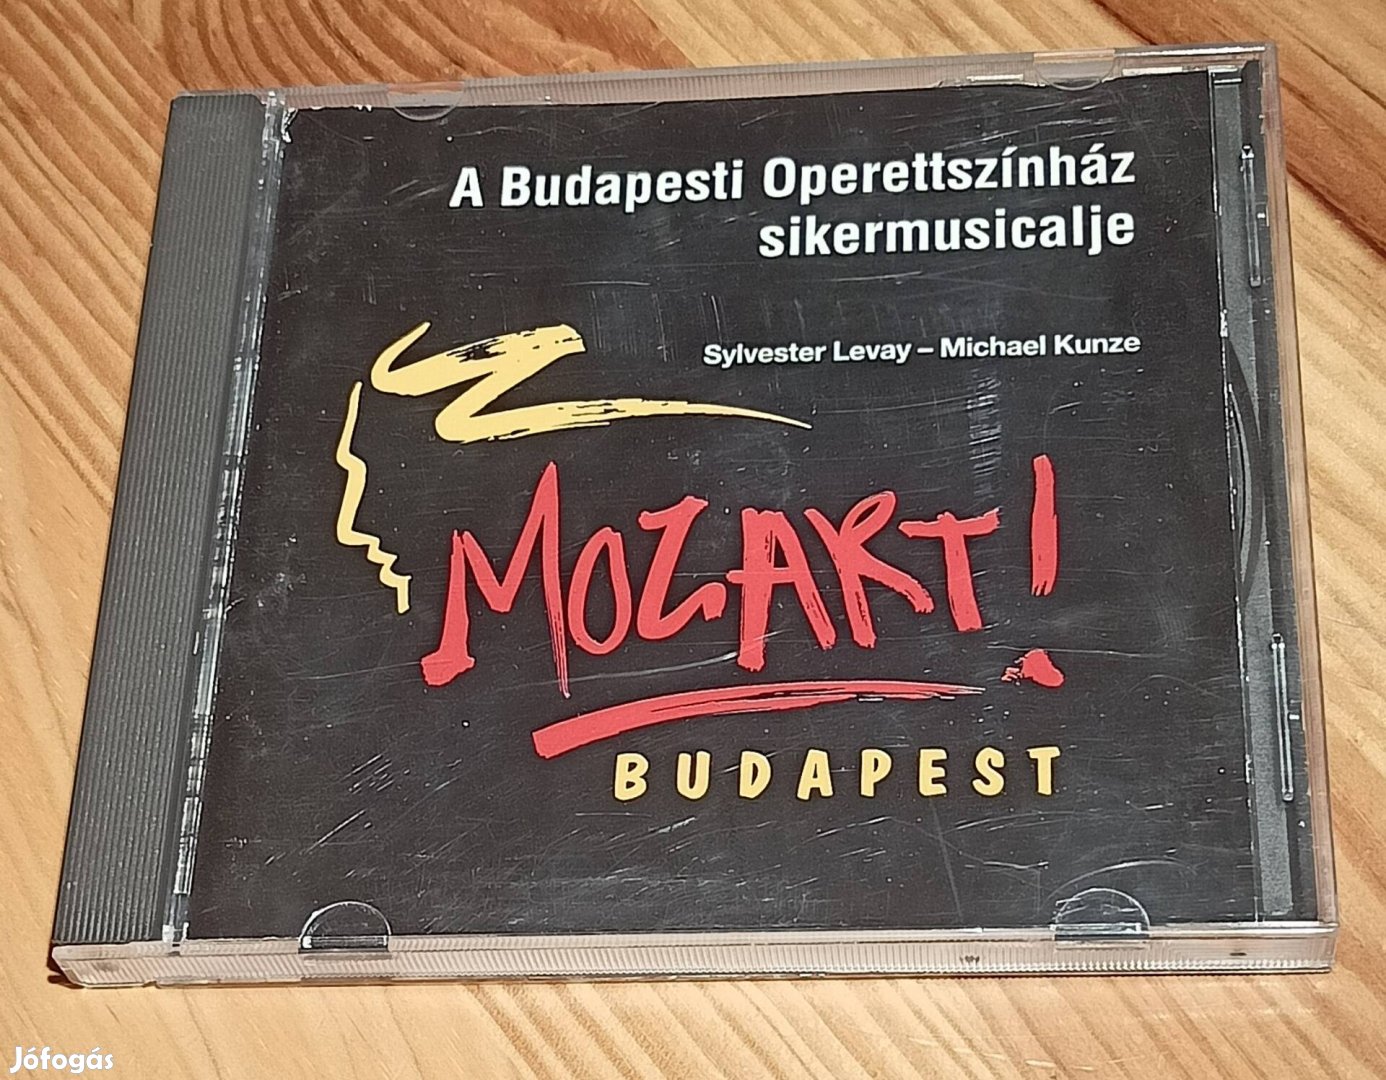 Mozart! Budapest - A Budapesti Operettszínház Sikermusicalje CD